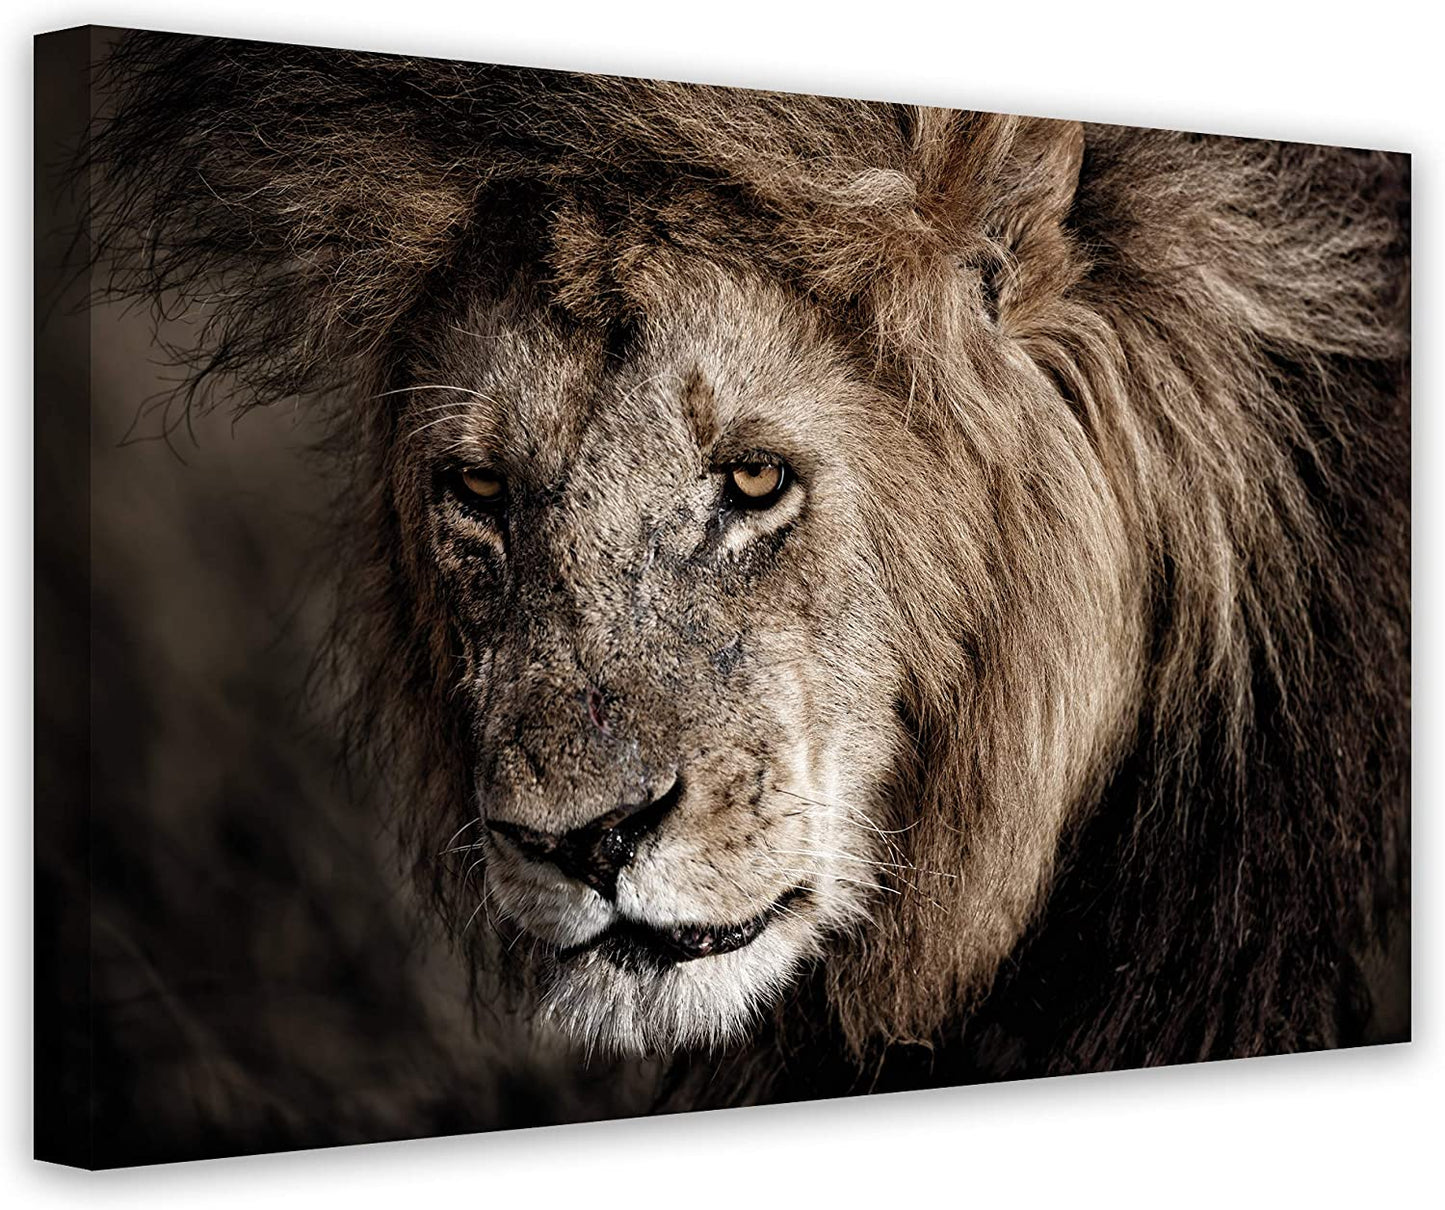 PICSonPAPER Hochwertiges Leinwandbild Löwe, 70 cm x 50 cm, Dekoration, Kunstdruck, Wandbild, willife, Premium Qualität